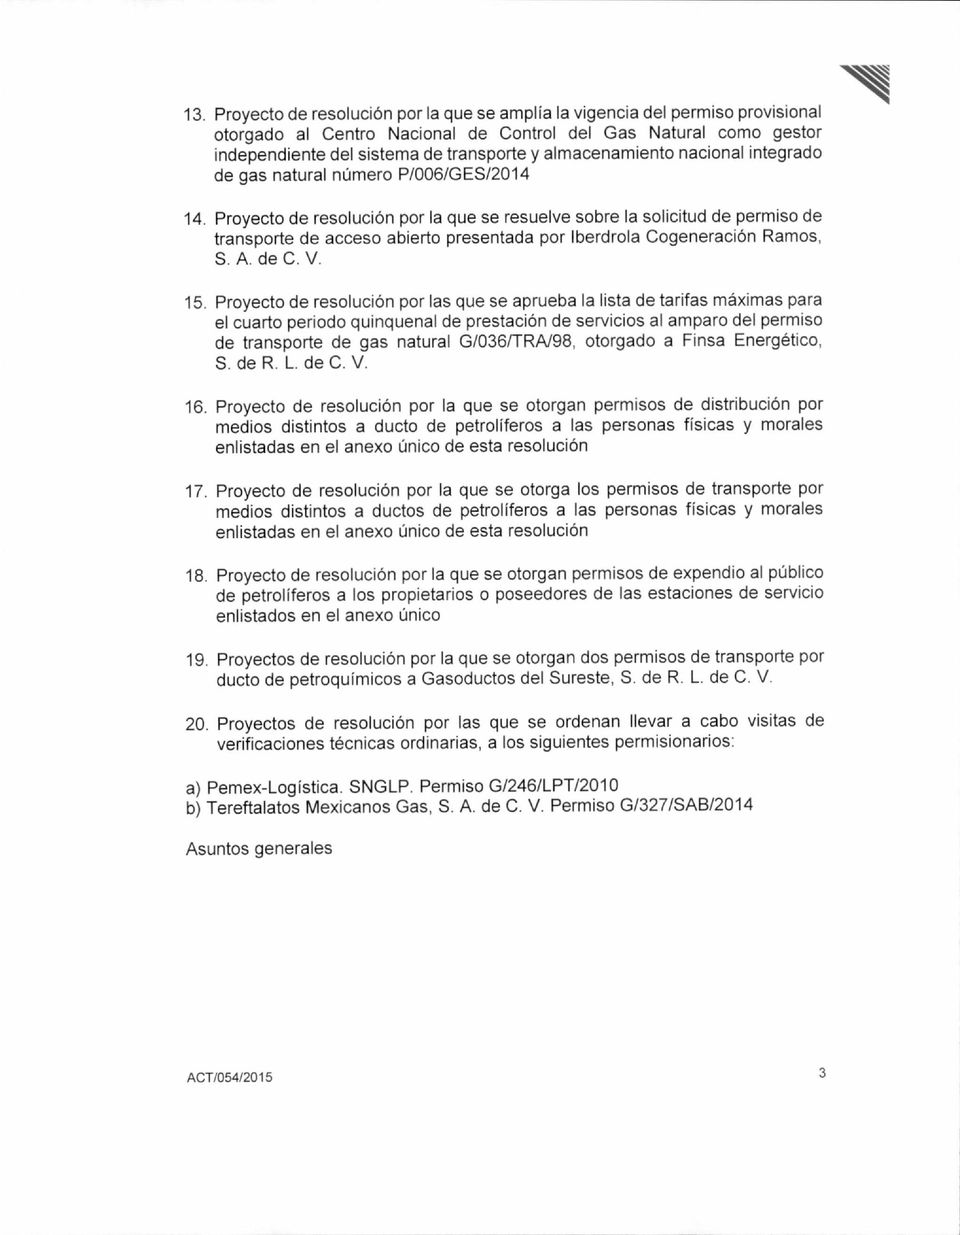 Proyecto de resolución por la que se resuelve sobre la solicitud de permiso de transporte de acceso abierto presentada por Iberdrola Cogeneración Ramos, S. A. de C. V. 15.